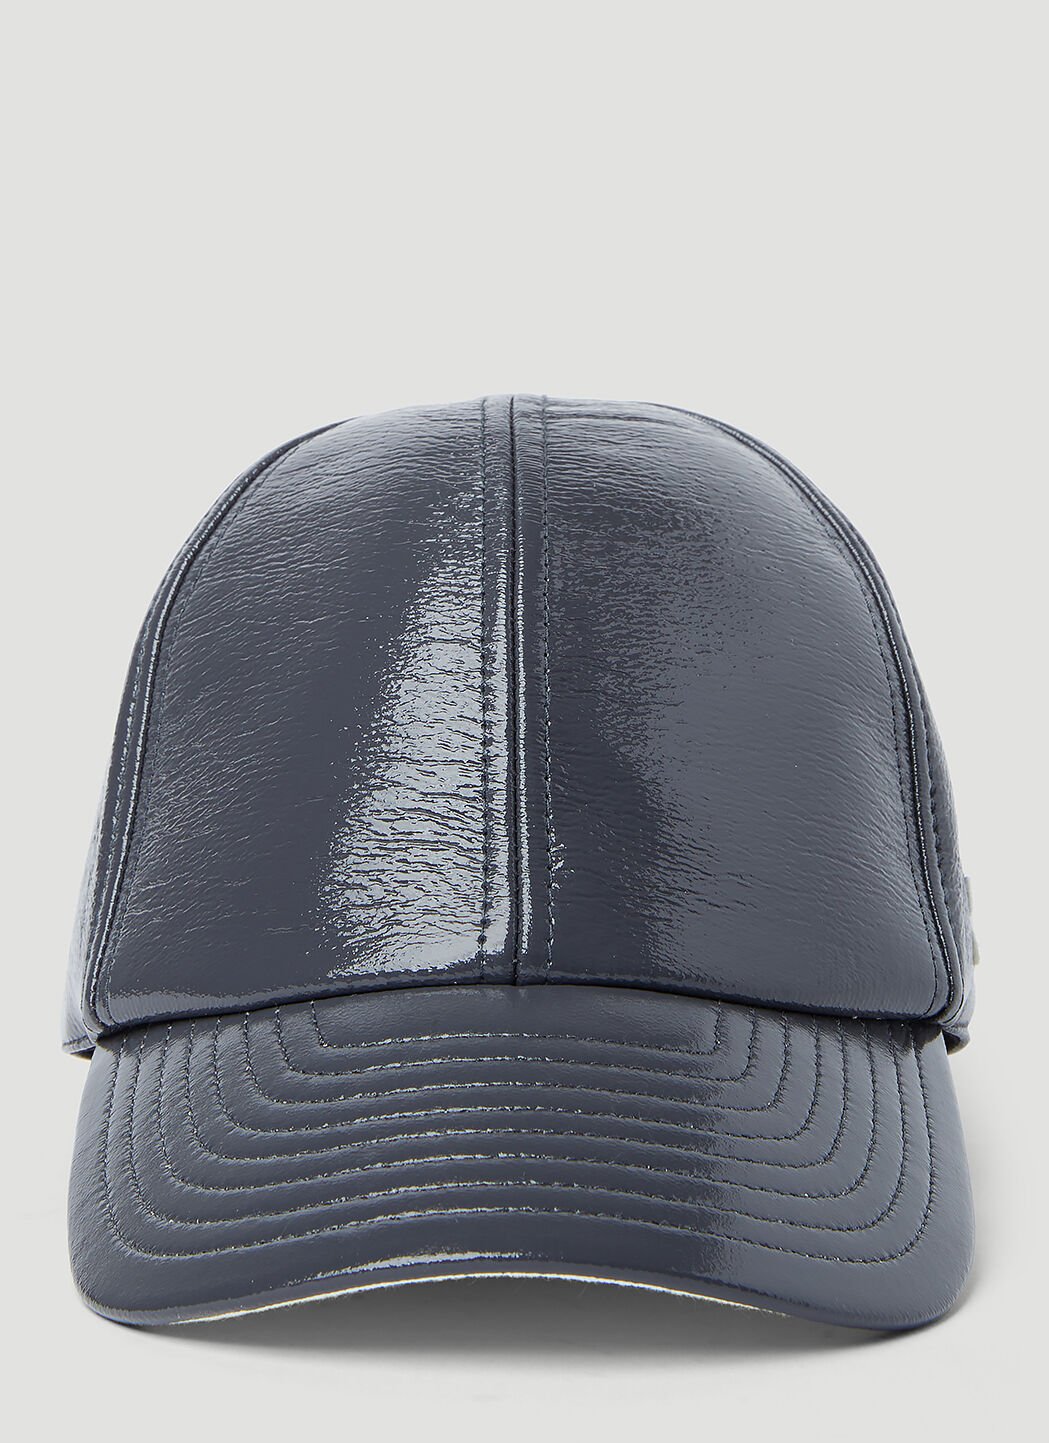 Courrèges Signature Vinyle Baseball Cap Grey cou0156001